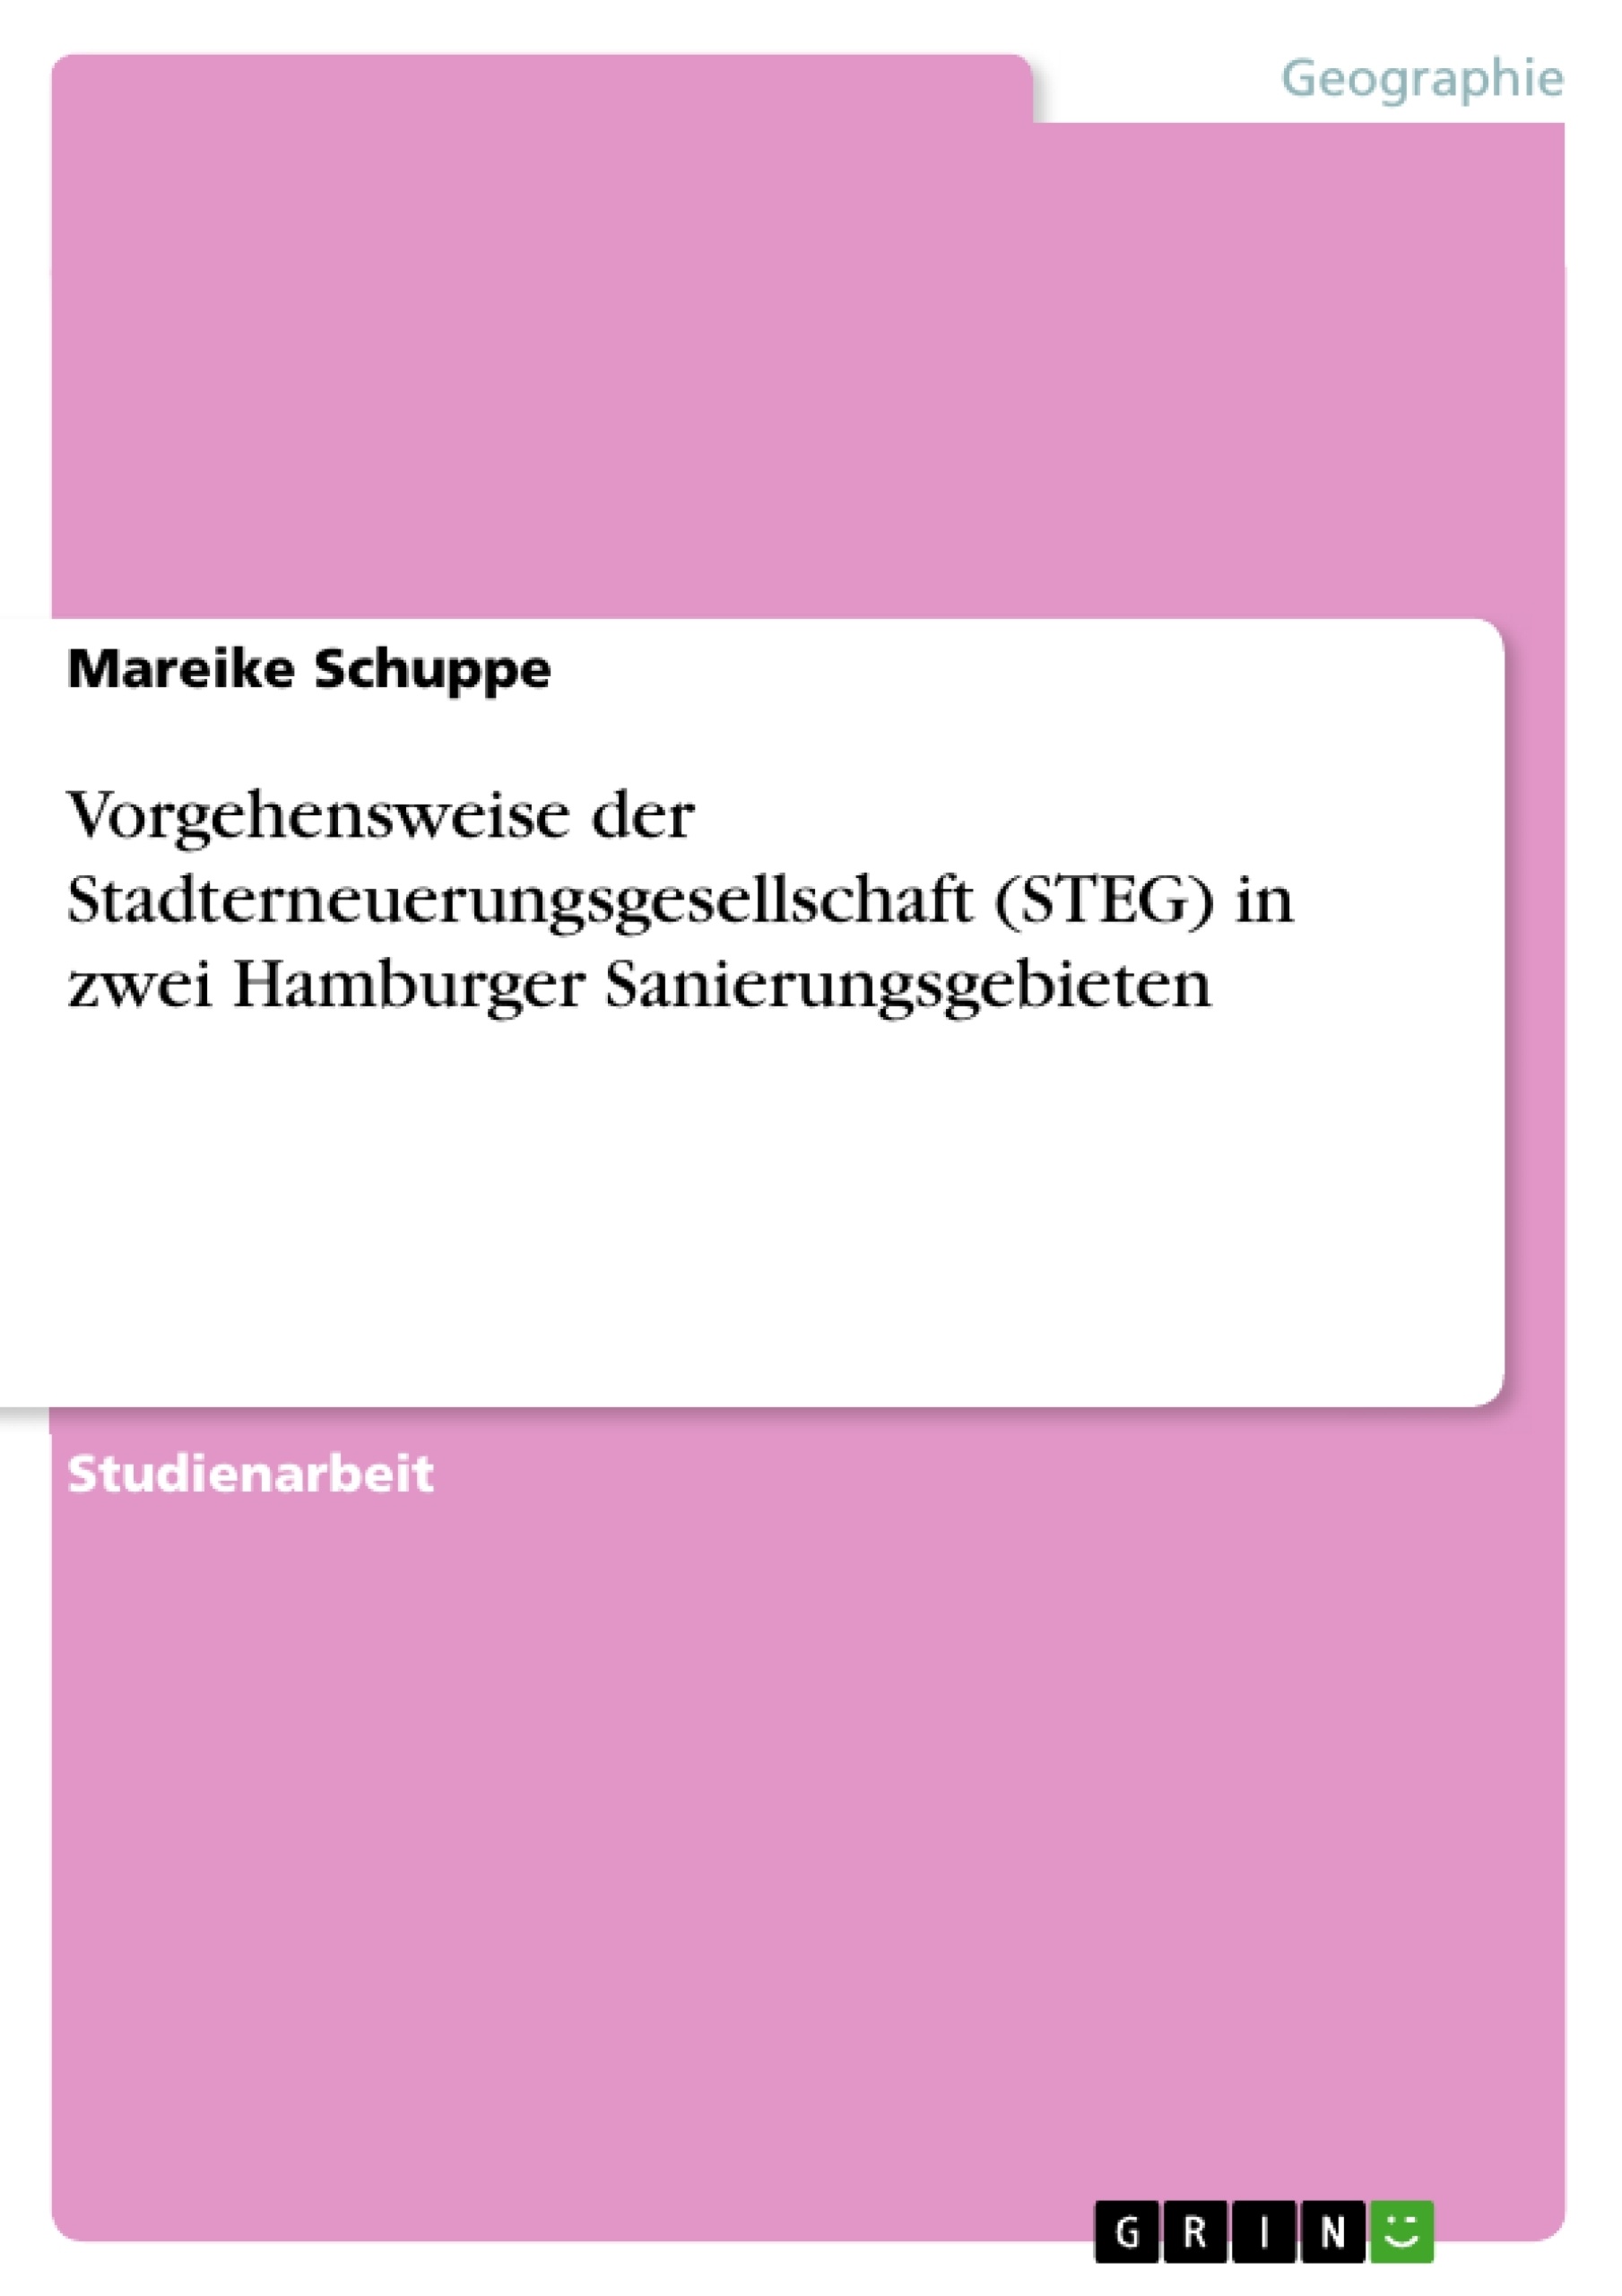 Título: Vorgehensweise der Stadterneuerungsgesellschaft (STEG) in zwei Hamburger Sanierungsgebieten